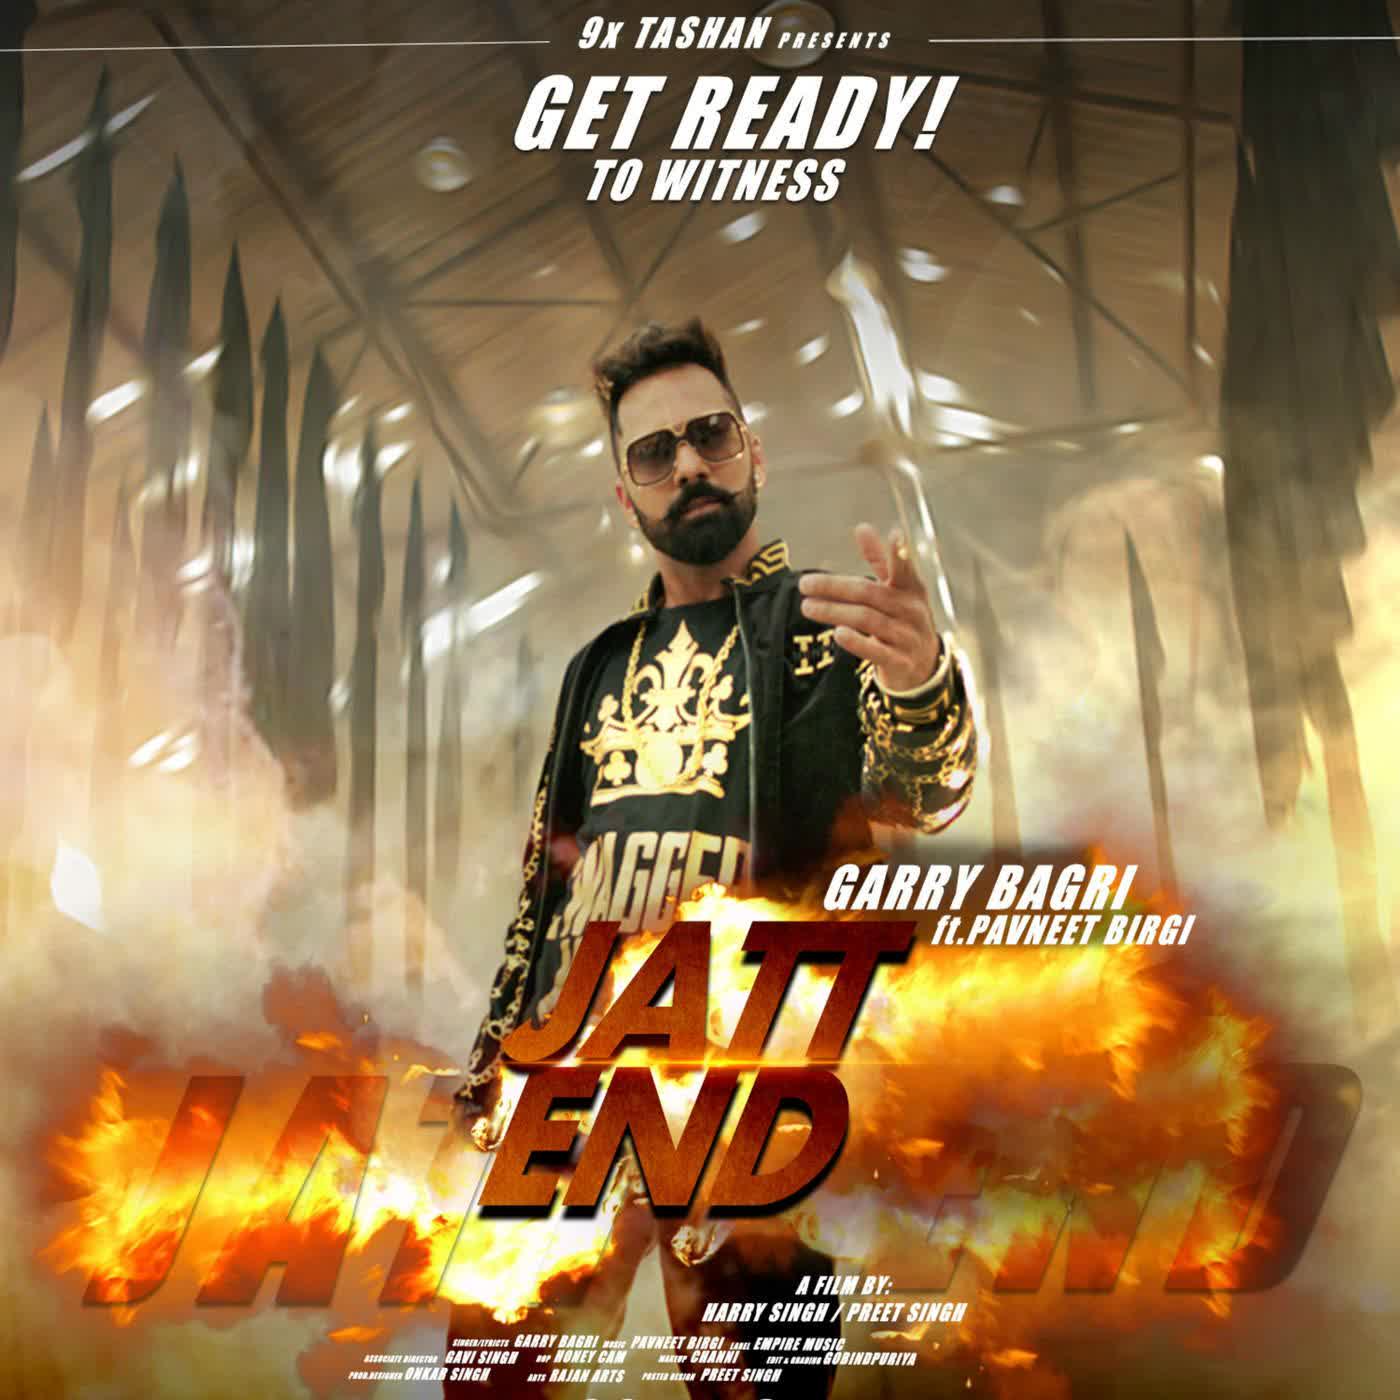 Jatt End Garry Bagri  Mp3 song download